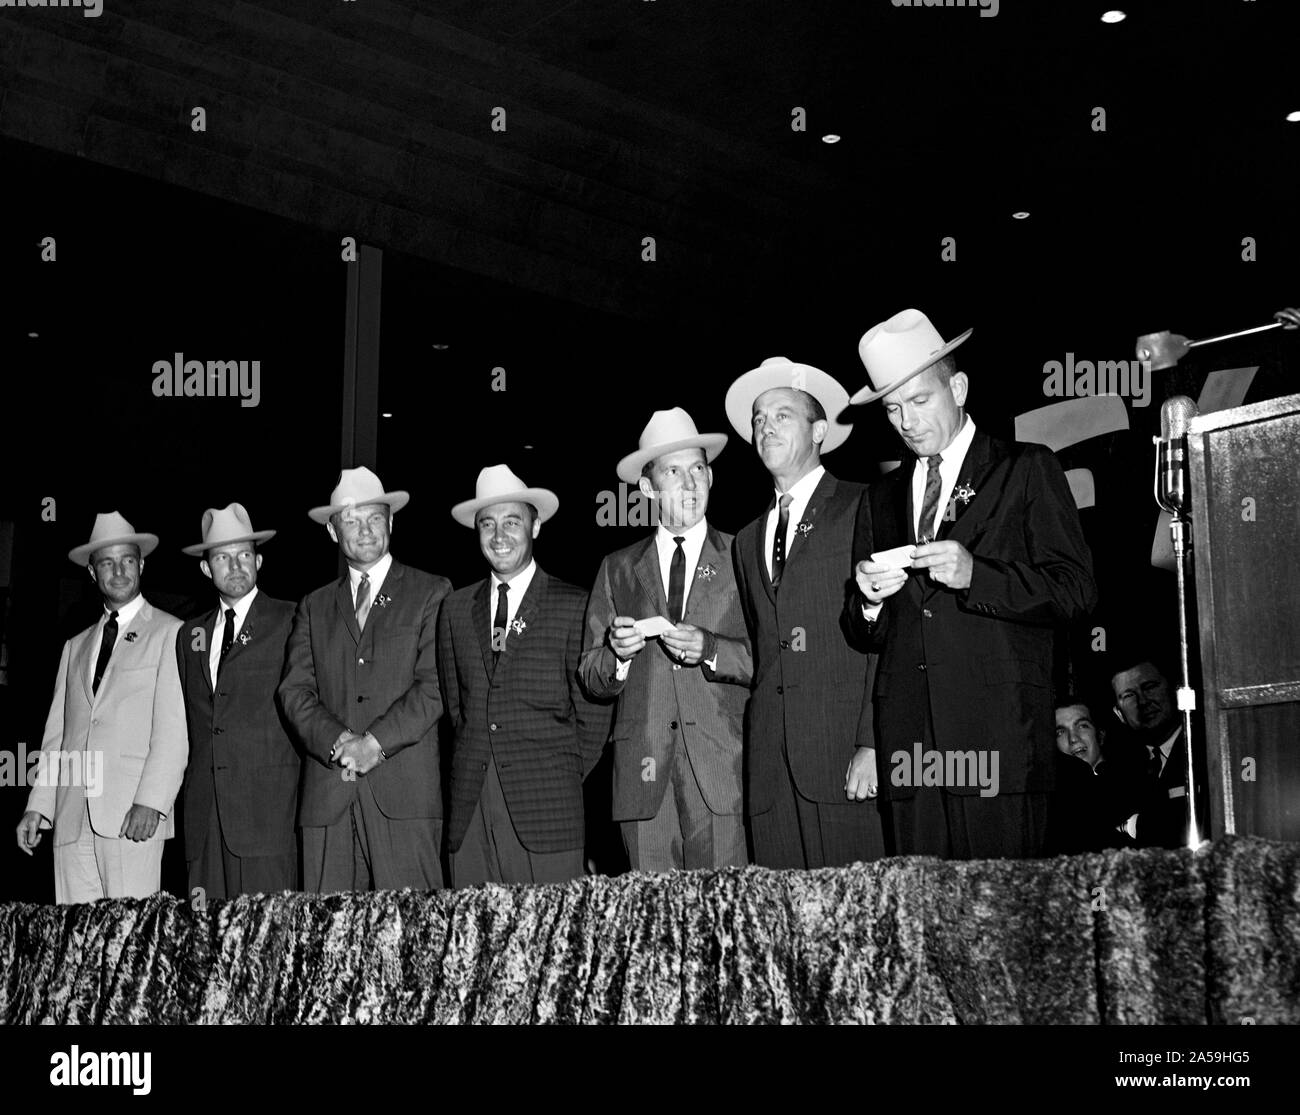 (4 Juli 1962) - - - Die ursprünglichen sieben Mercury Astronauten, jedem tragen Neue cowboyhüte und ein Abzeichen in der Form eines Sterns, abgebildet auf der Bühne an der Sam Houston Coliseum. Eine große Menschenmenge war an Hand sie zu Houston, Texas begrüßen zu dürfen. Zu recht sind Astronauten M. Scott Carpenter, L. Gordon Cooper jr., John Glenn Jr., Virgil Grissom, Walter I. M. Schirra jr., Alan B. Shepard, Jr., und Donald K. Slayton verlassen. Senator John Tower (R-Texas) ist ganz rechts im Hintergrund zu sehen. Stockfoto